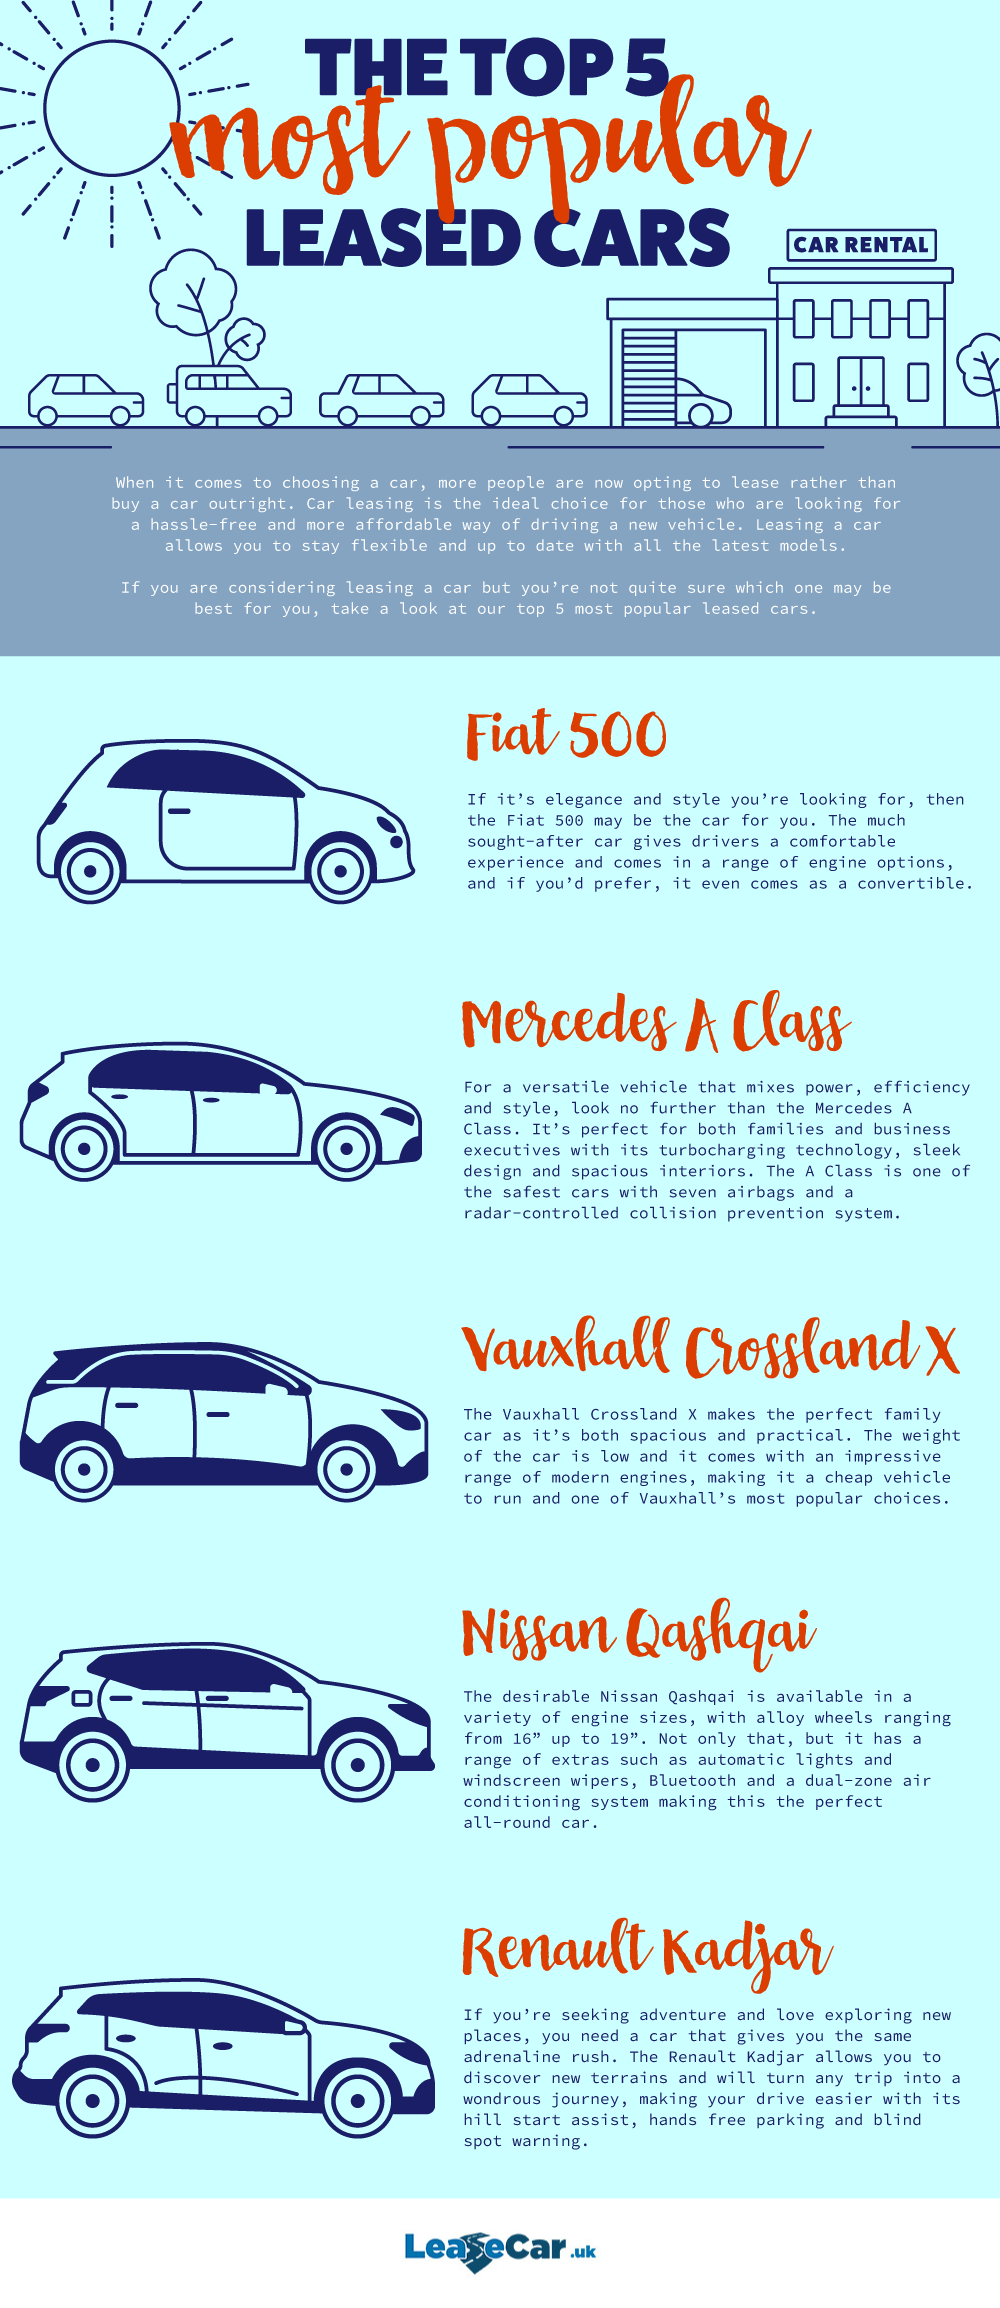 Leasecaruk Top 5 Rental Cars